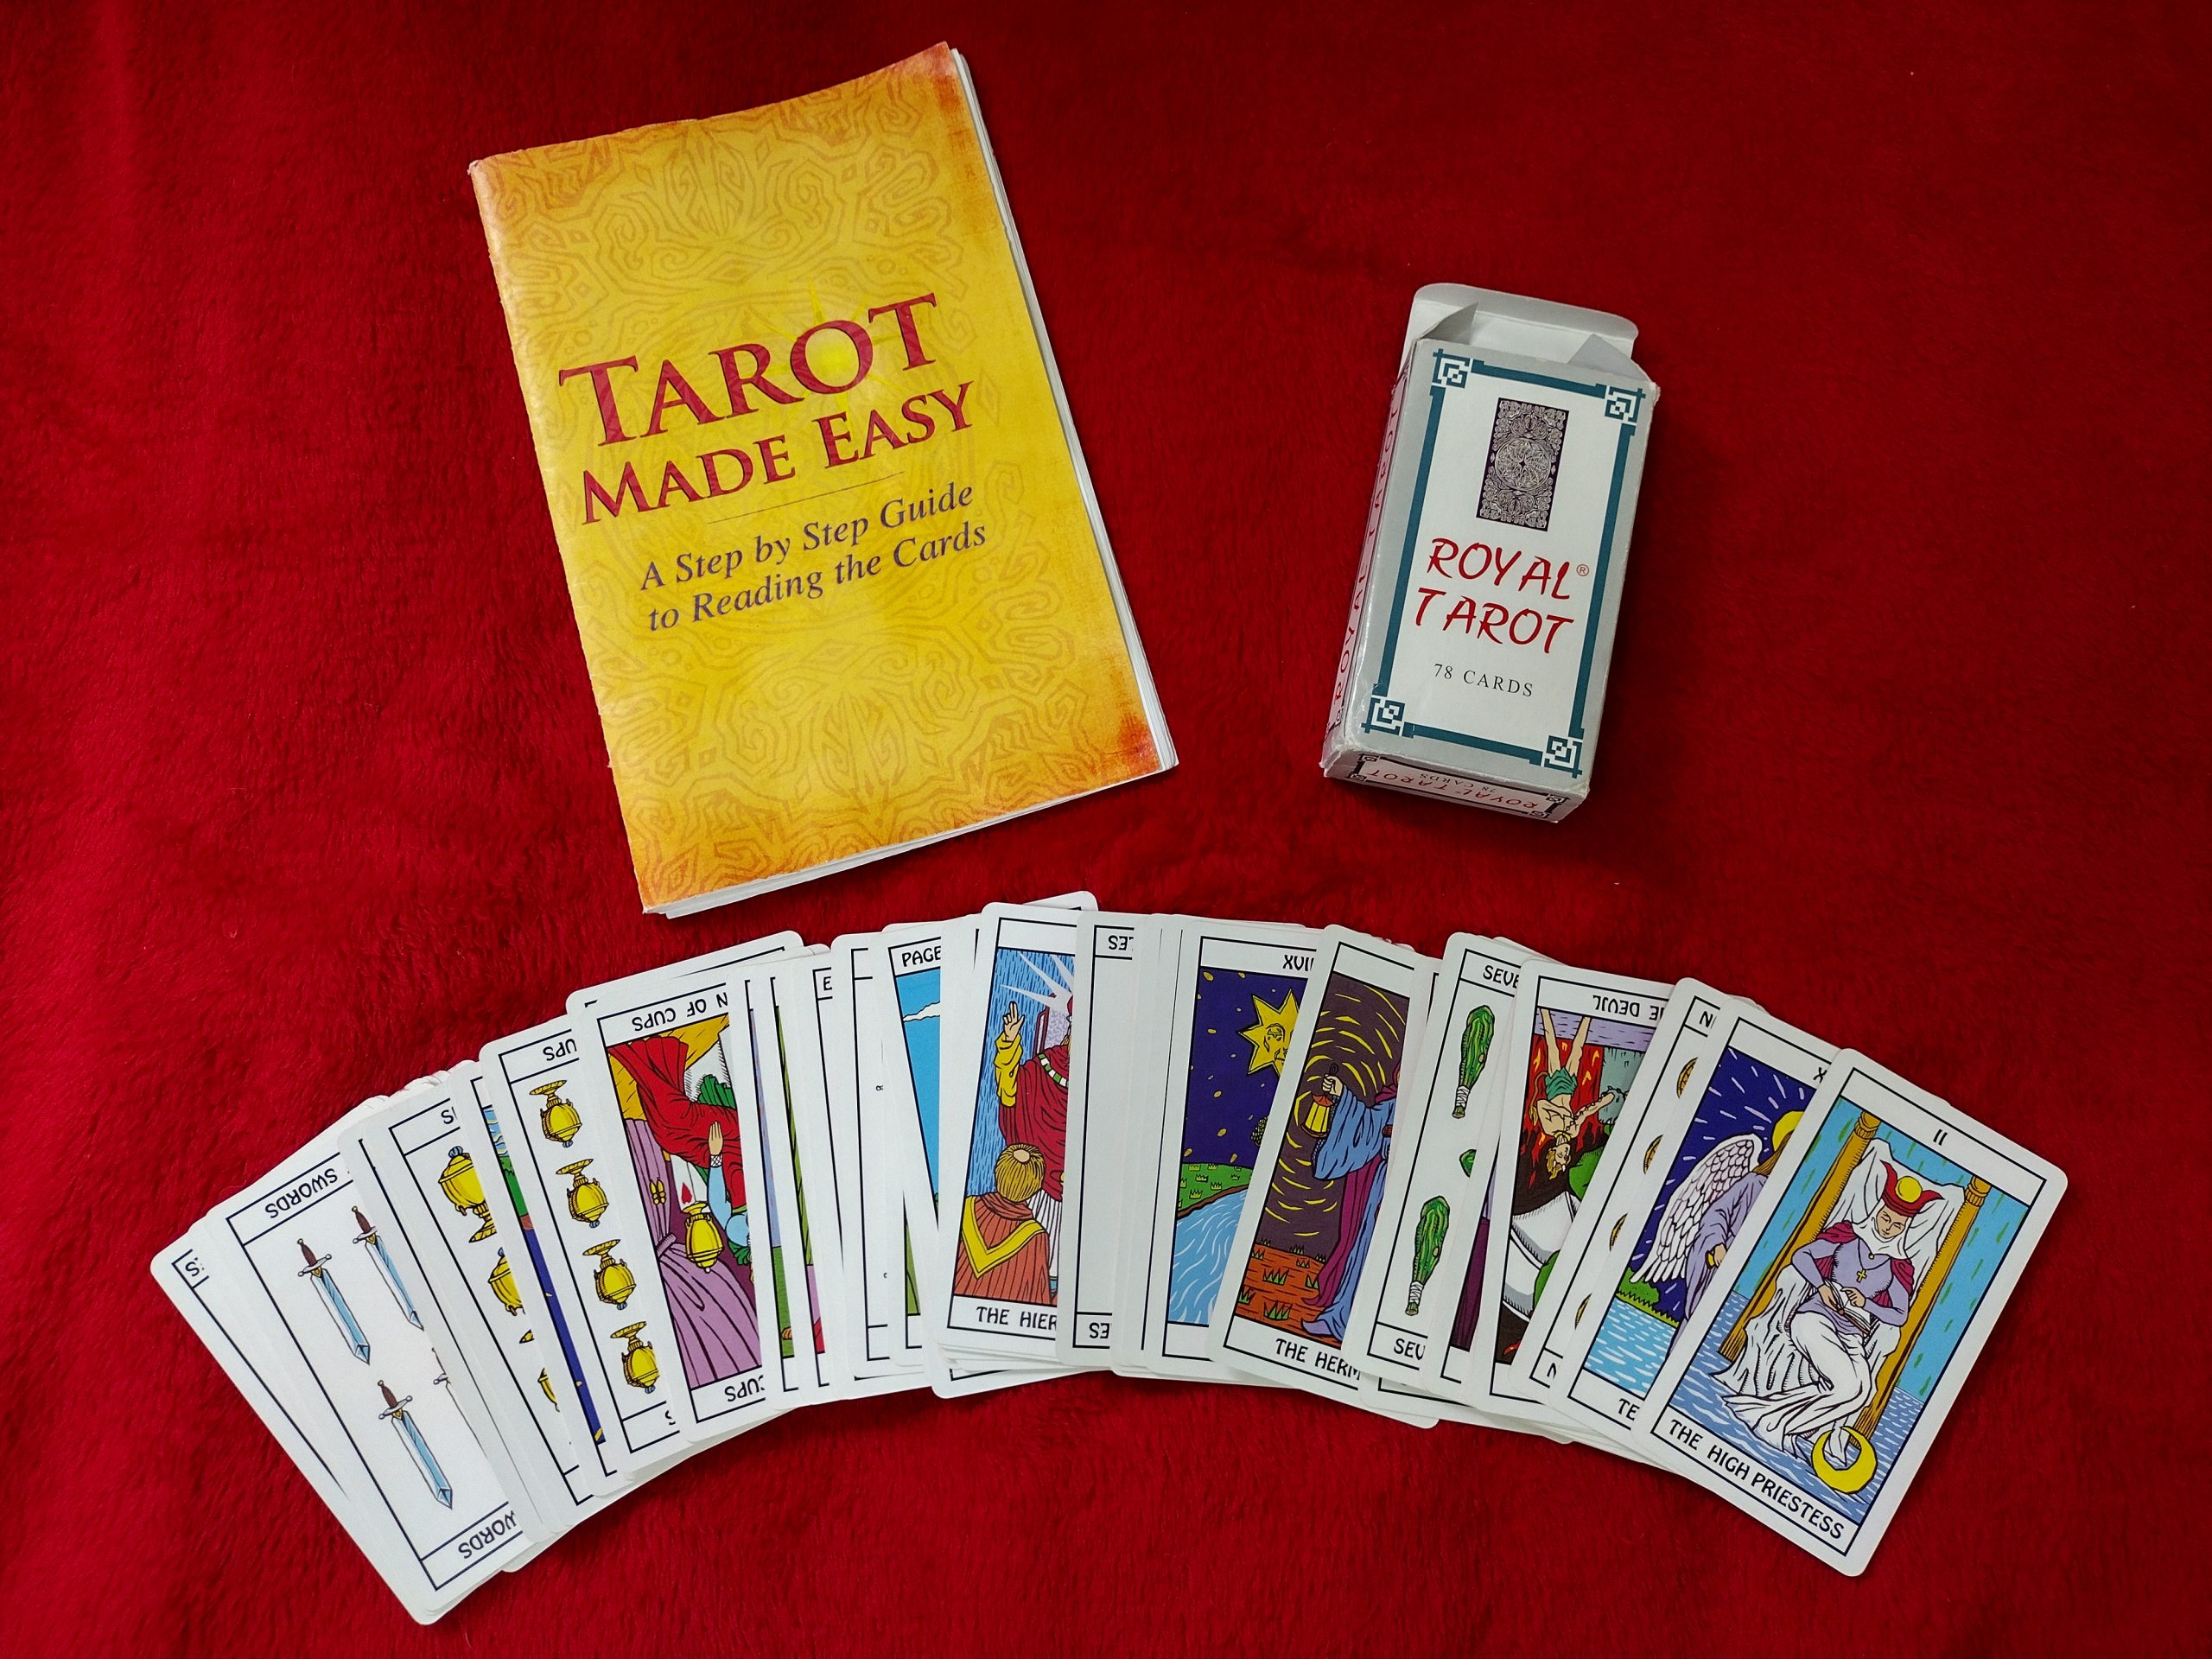 Royal Tarot cards